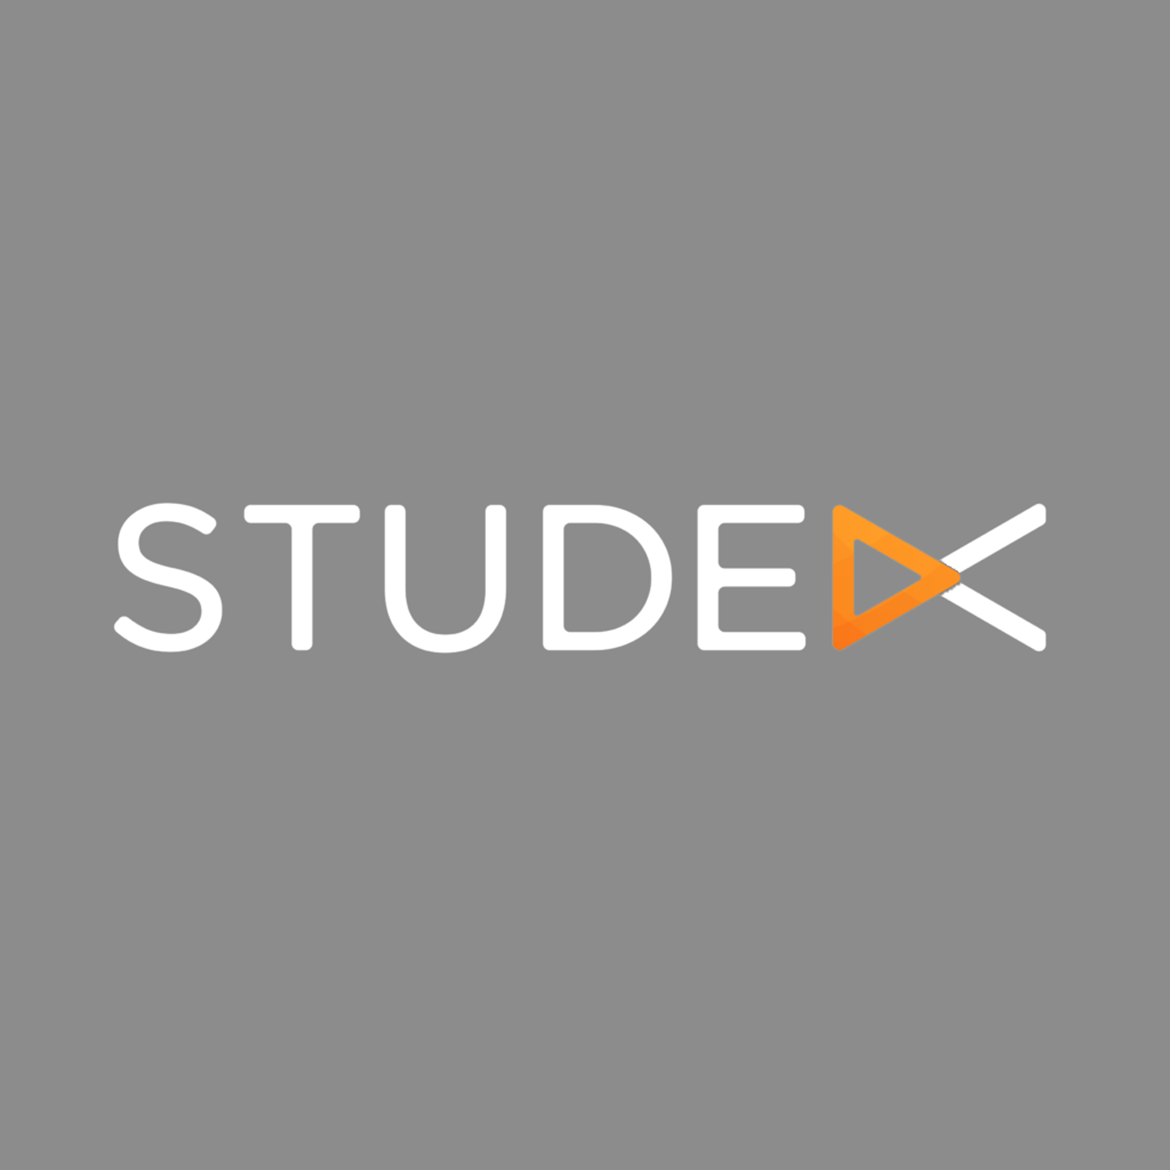 Studex.tv